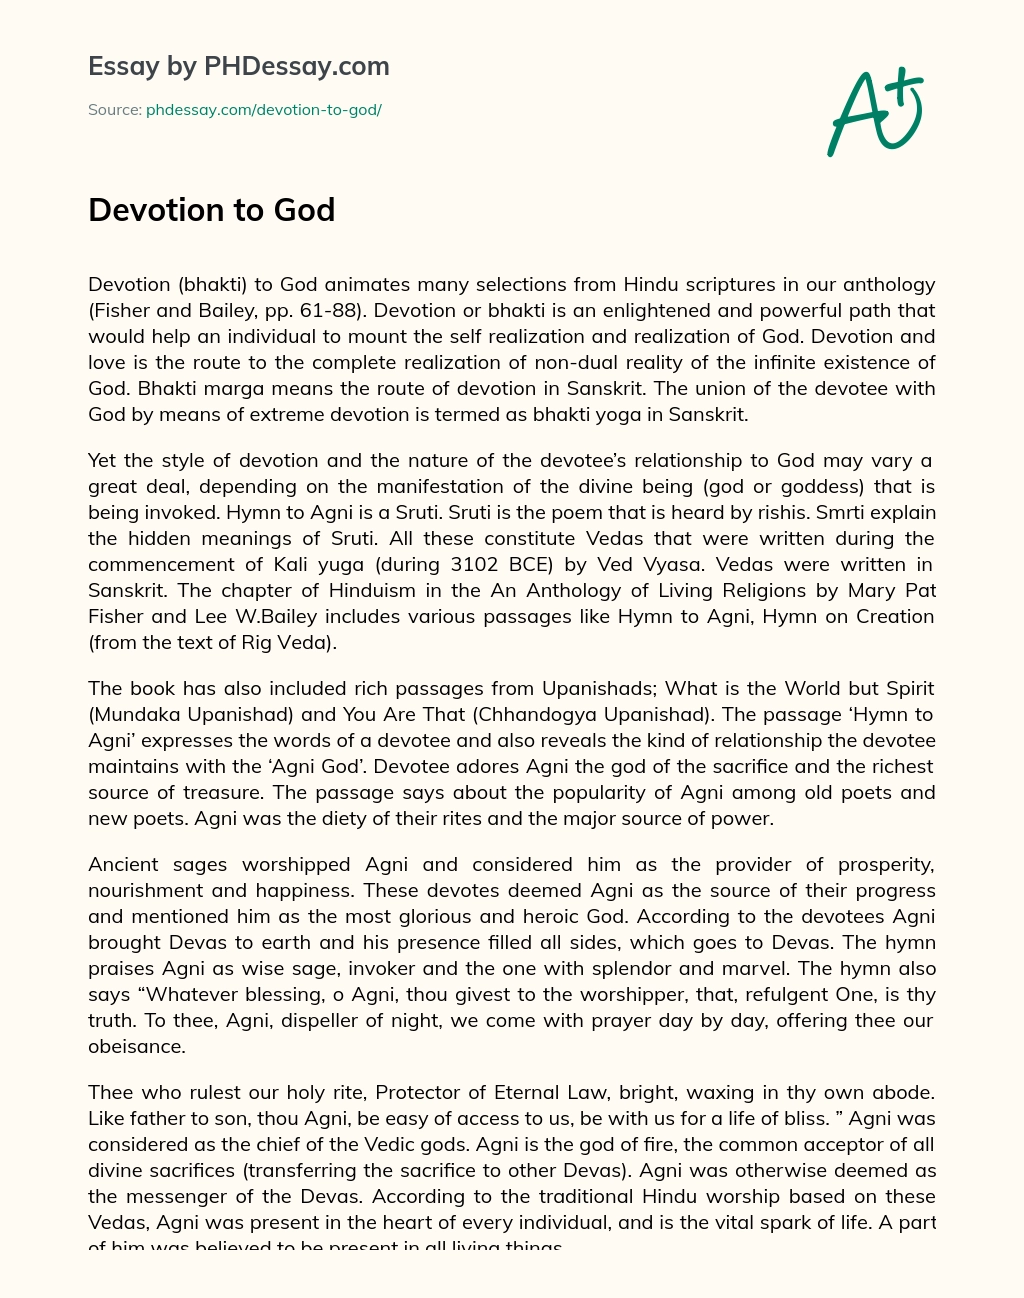 Devotion to God essay